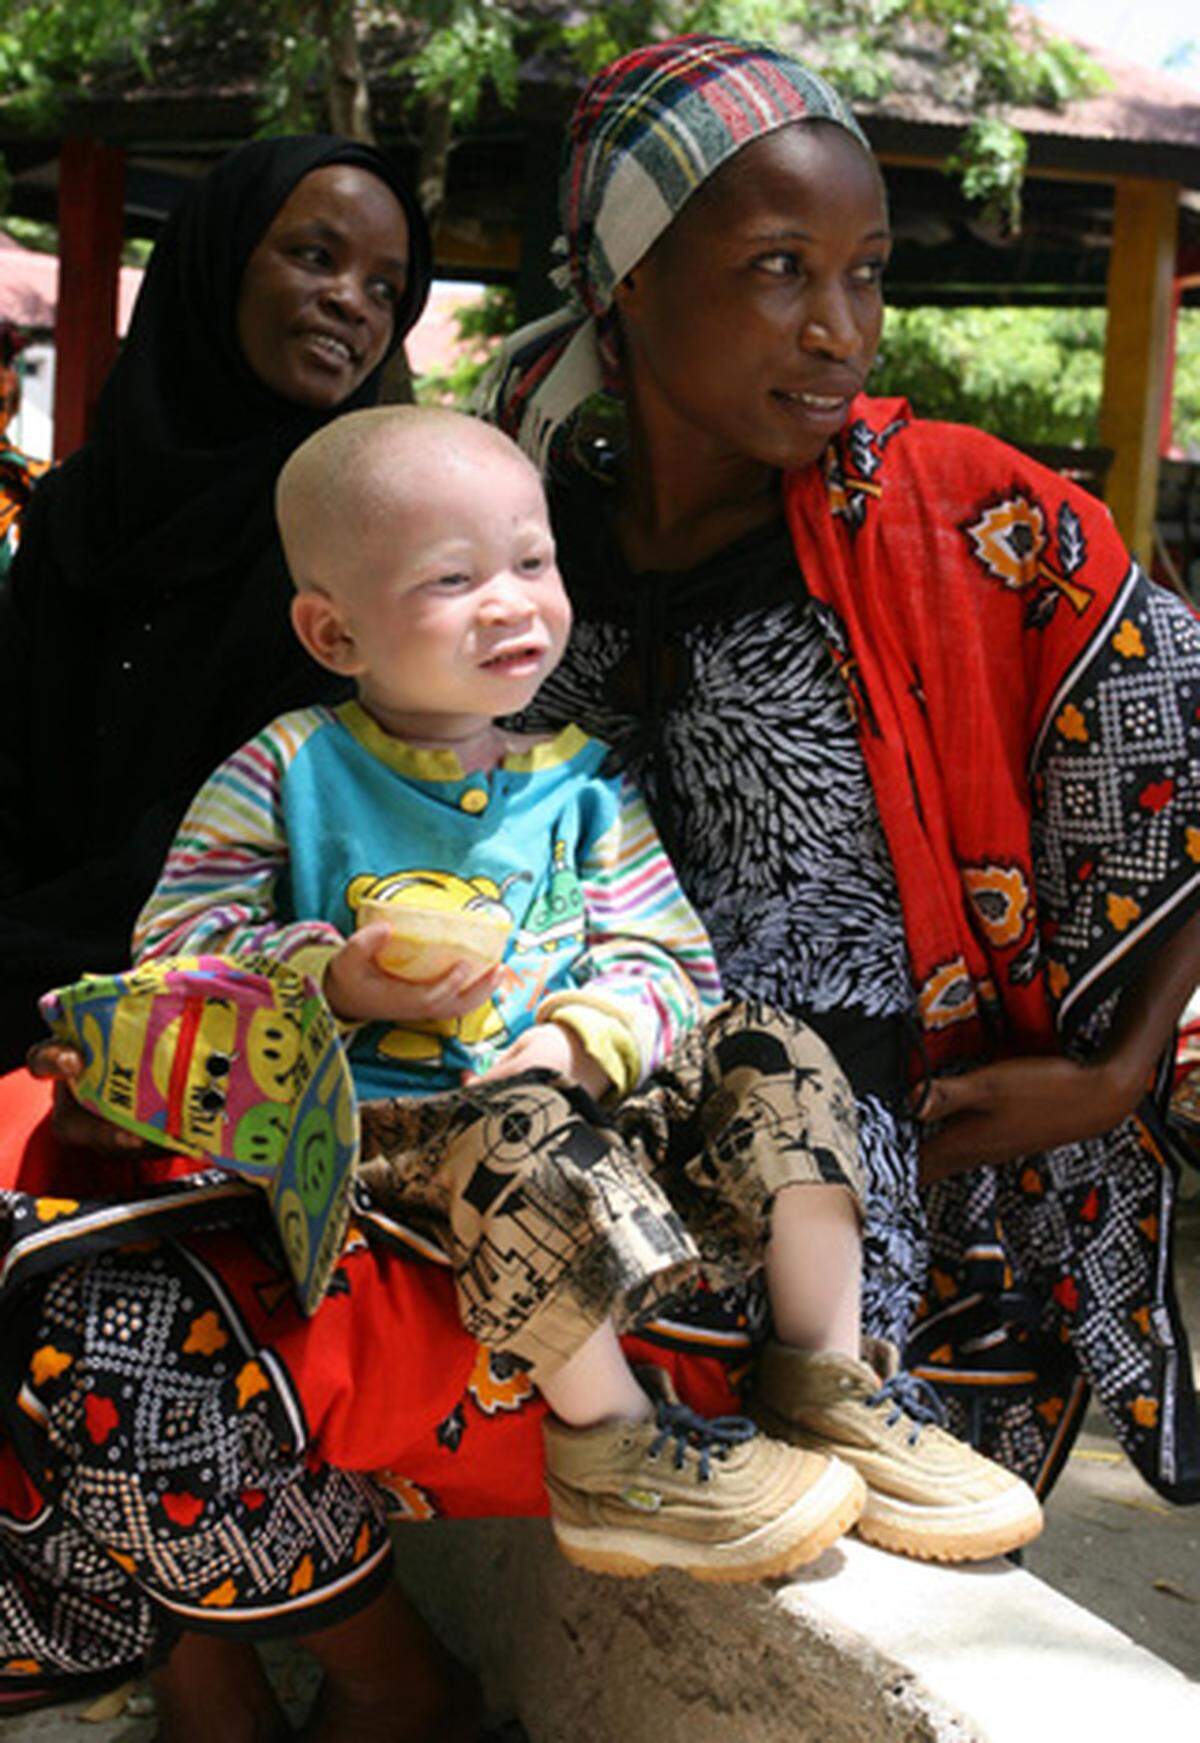 Bei Albinismus handelt es sich um eine Pigmentstörung. Der Haut fehlt der Farbstoff Melanin. In Tansania sind etwa 4000 Albinos registriert. Die Schätzungen der tansanischen Albino-Gesellschaft gehen allerdings von rund 170.000 Menschen aus. Albinos leiden in Tansania besonders unter den intensiven Sonnenstrahlen, einer von sechs erkrankt an Hautkrebs.